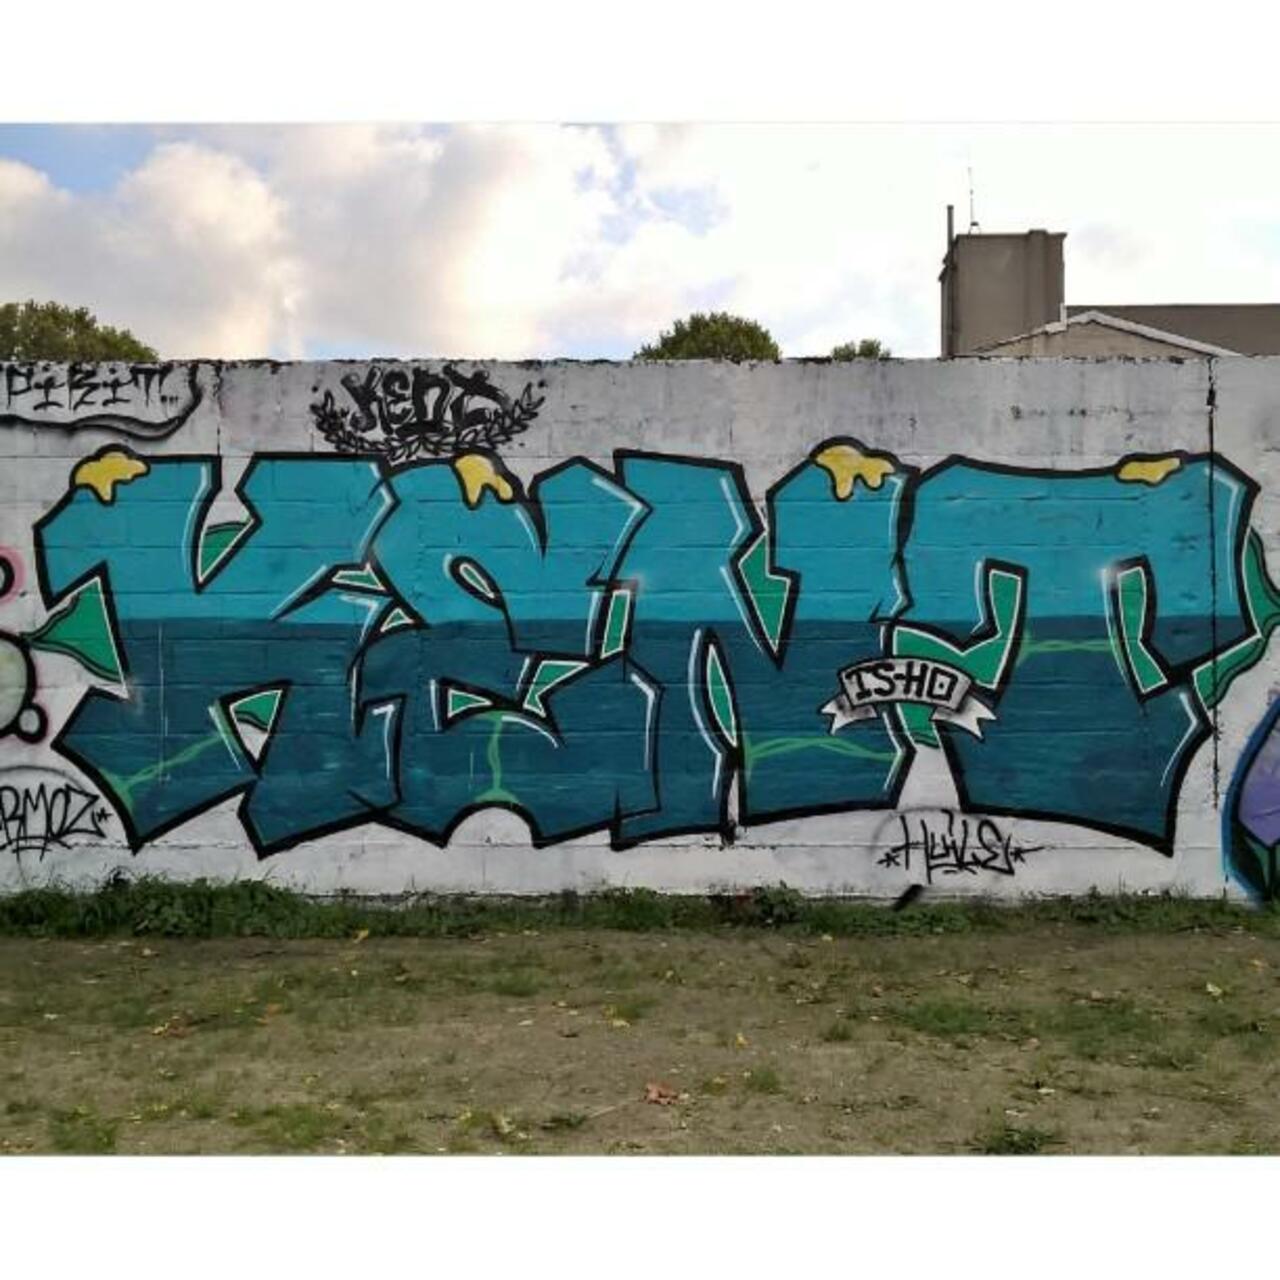 #Paris #graffiti photo by @maxdimontemarciano http://ift.tt/1X9d4Q6 #StreetArt http://t.co/Db0nza3u56